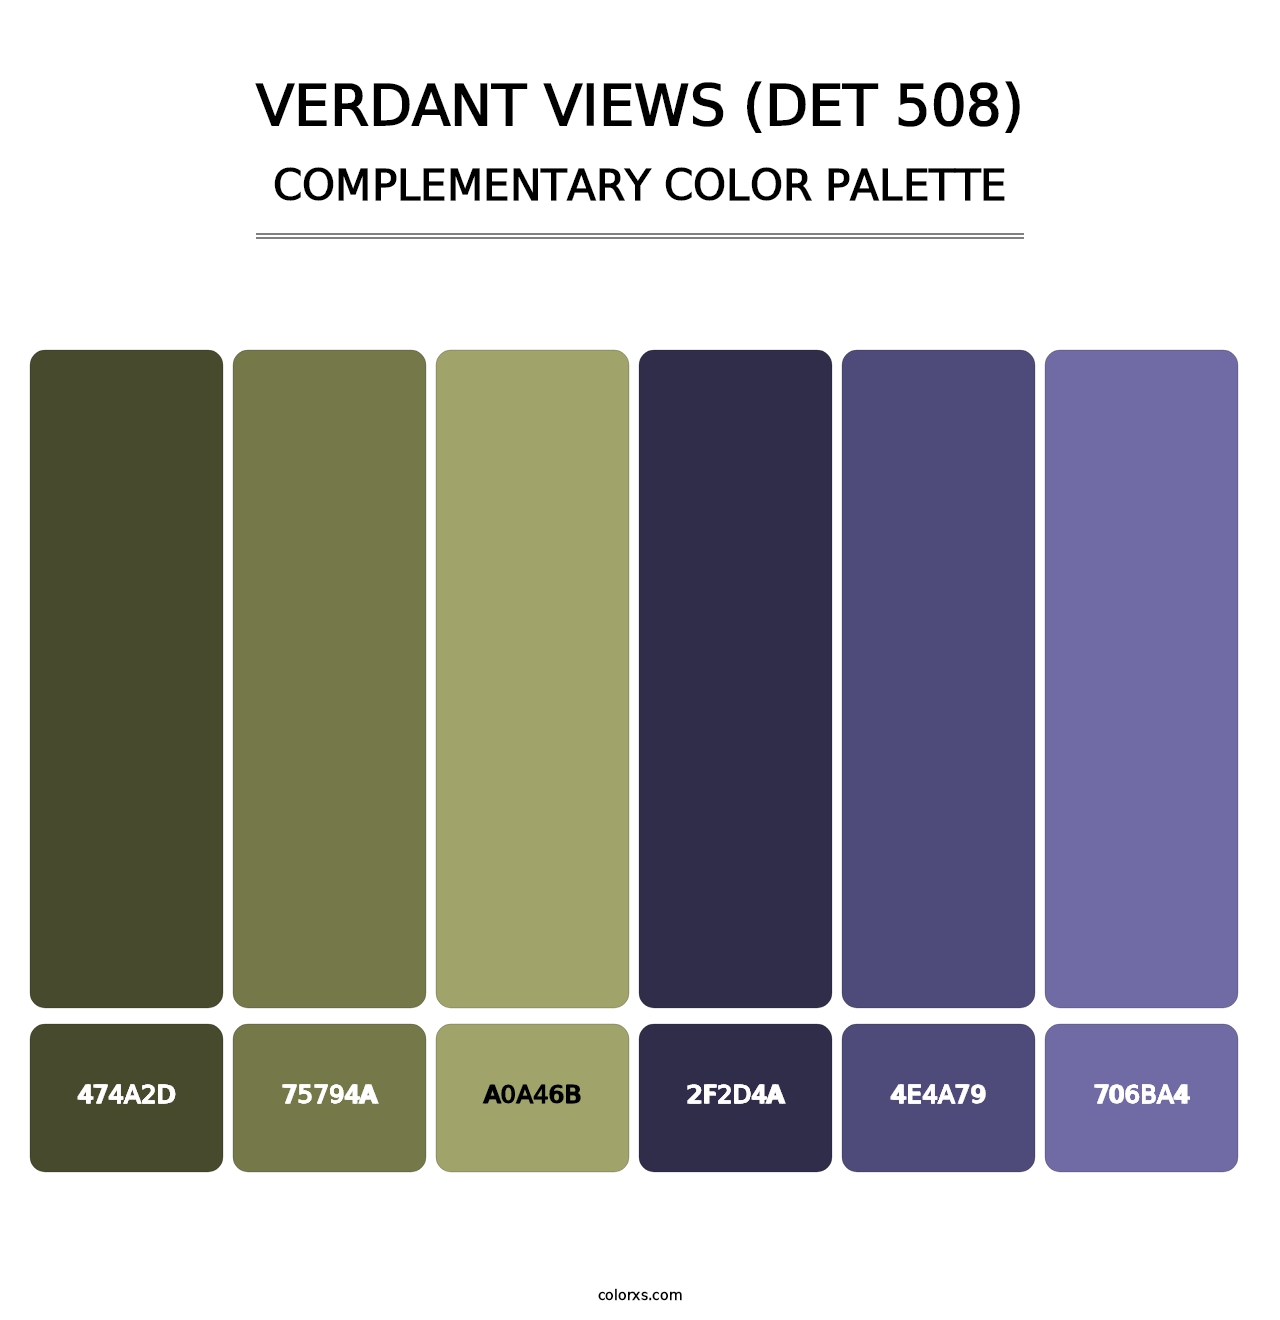 Verdant Views (DET 508) - Complementary Color Palette